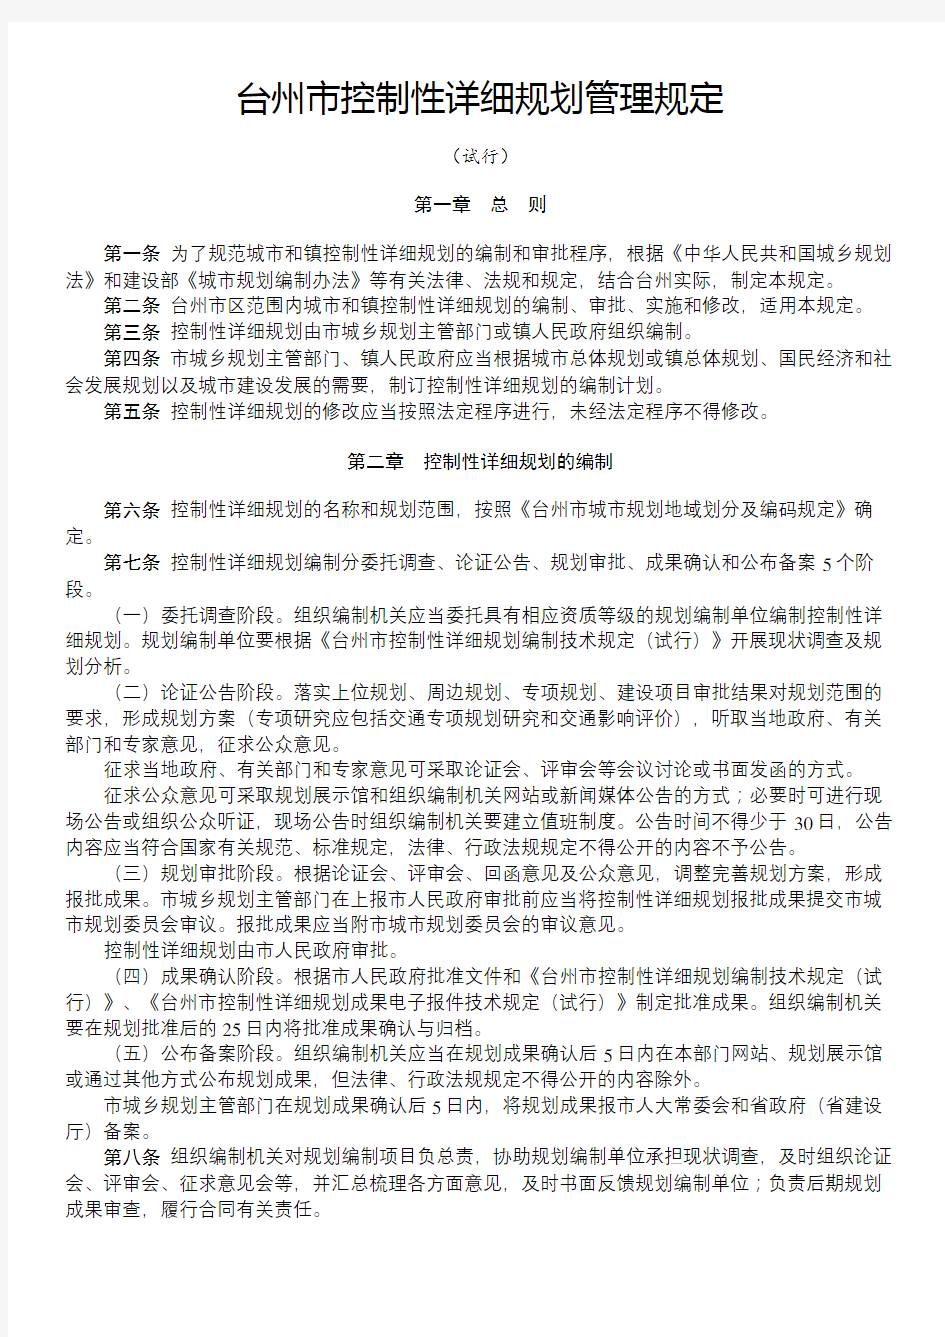 台州市控制性详细规划管理规定